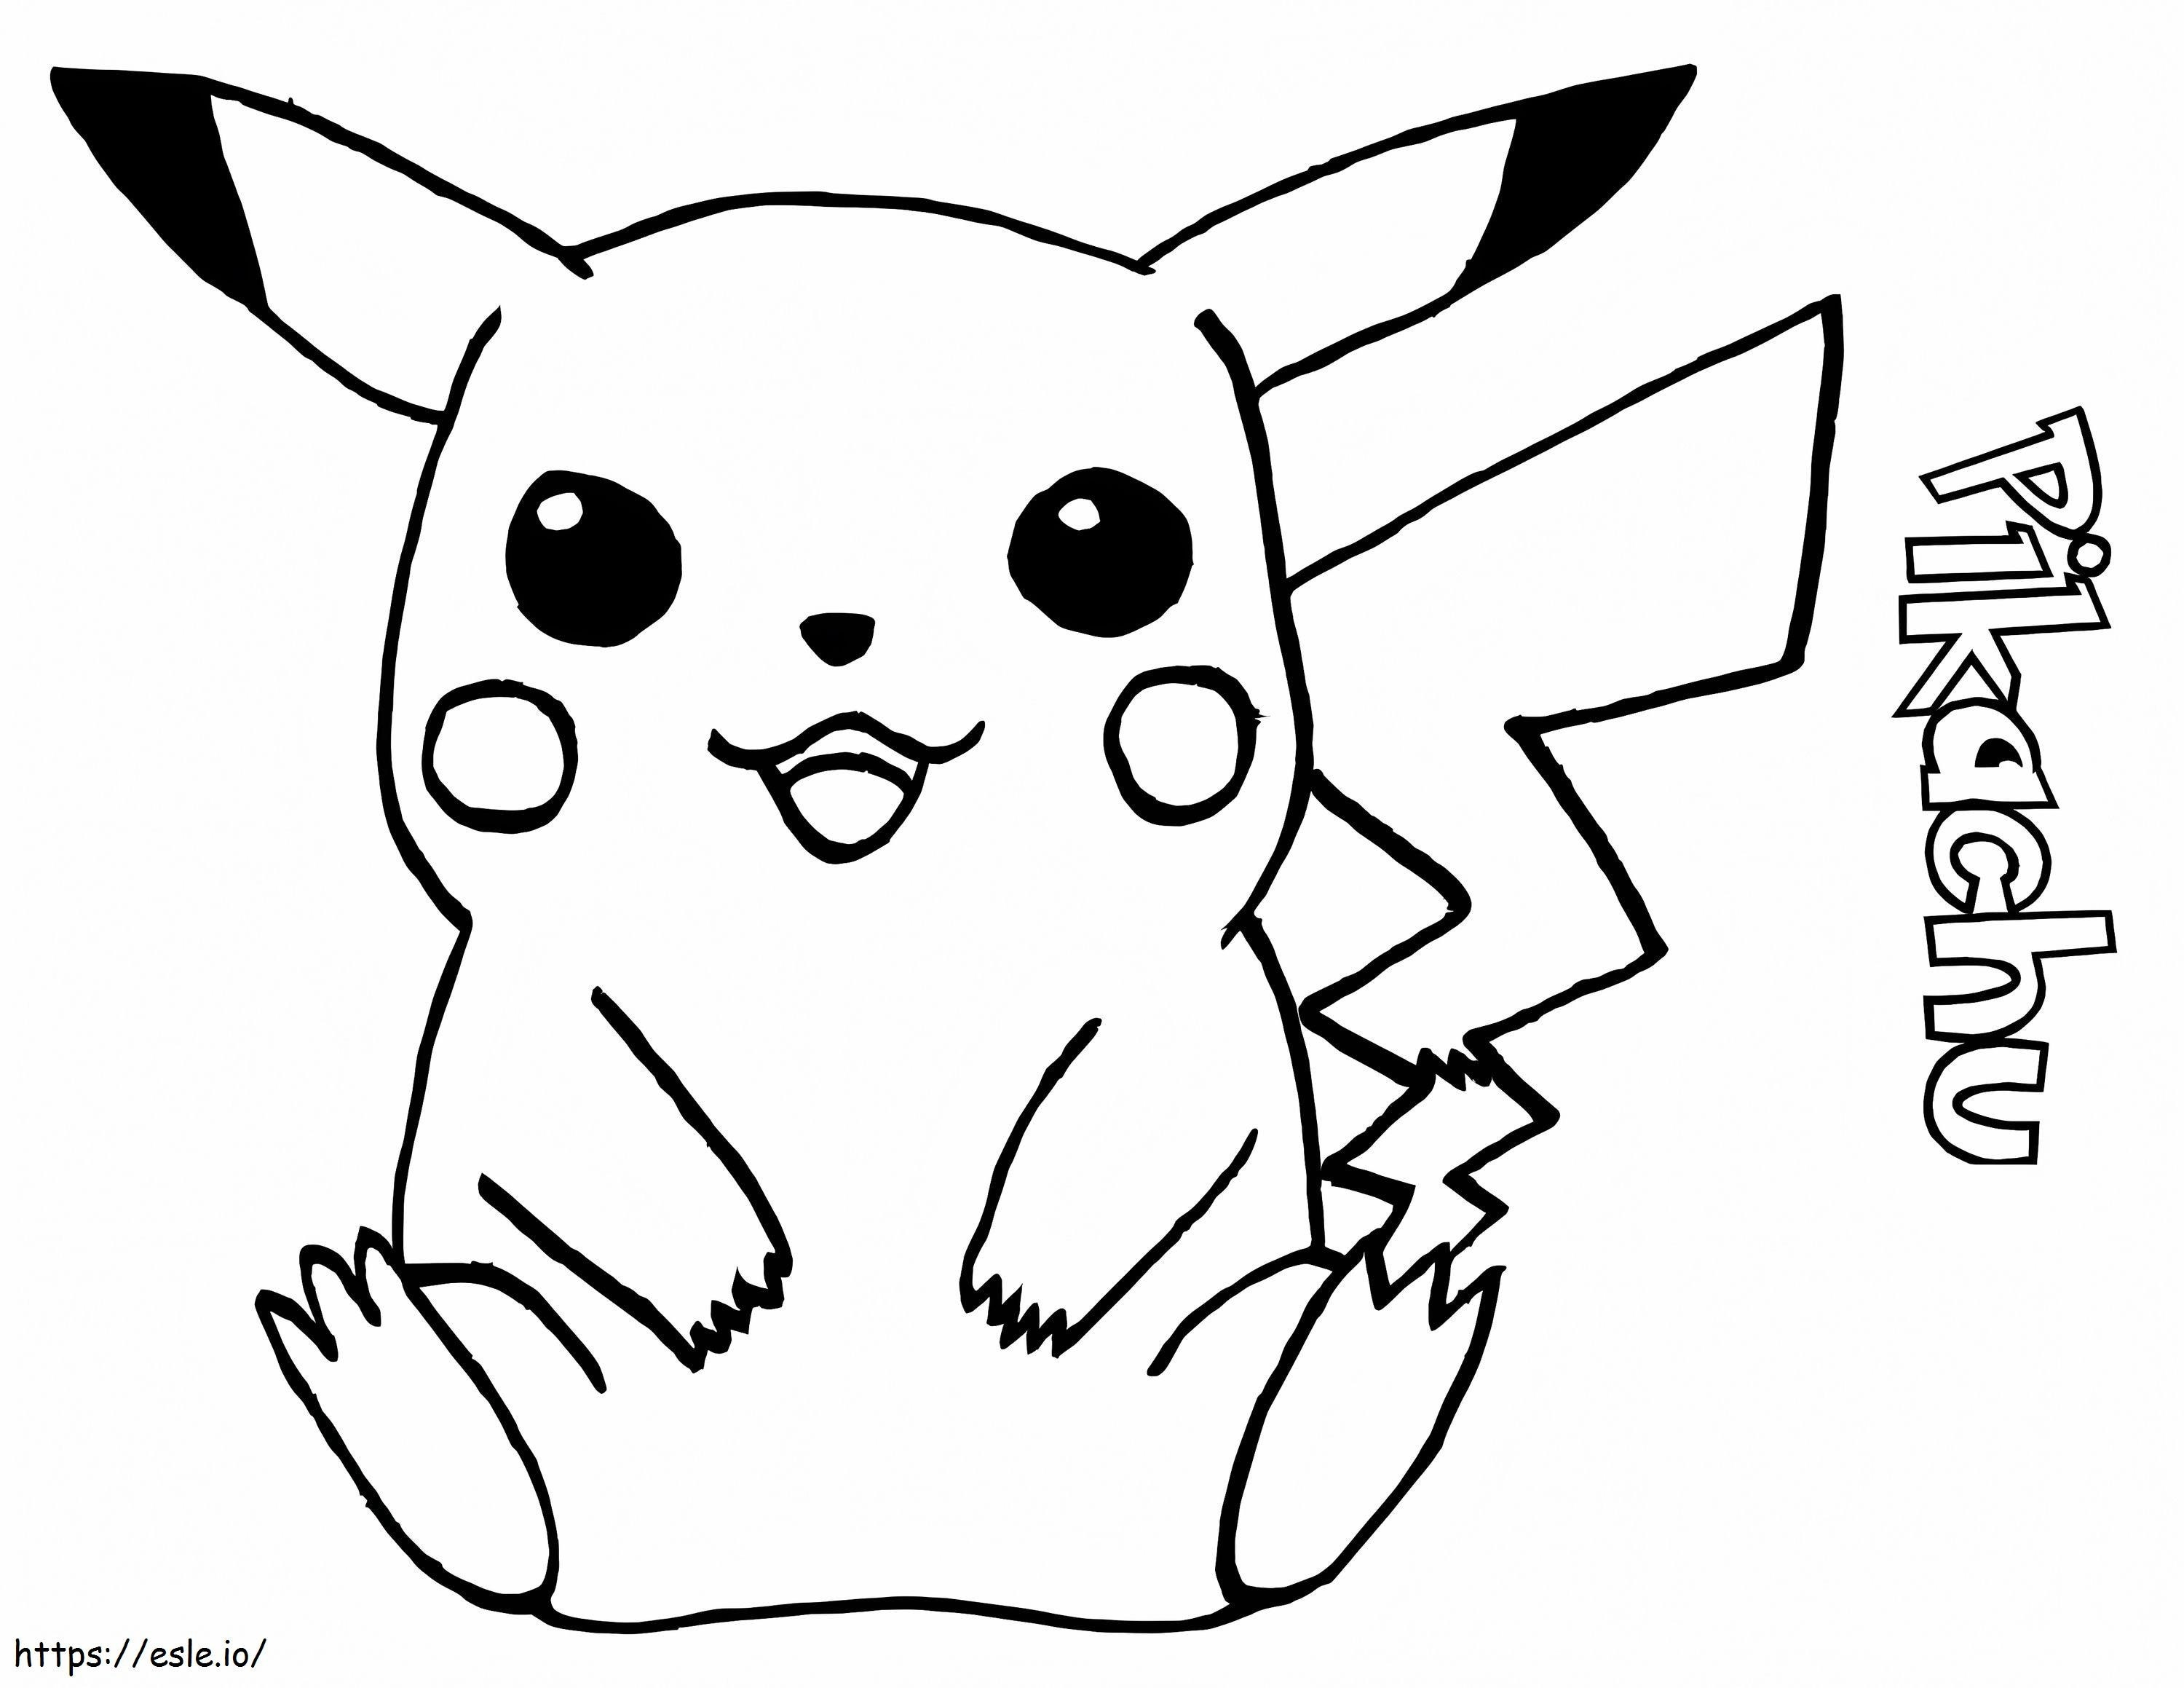 Coloriage Pikachu assis à imprimer dessin